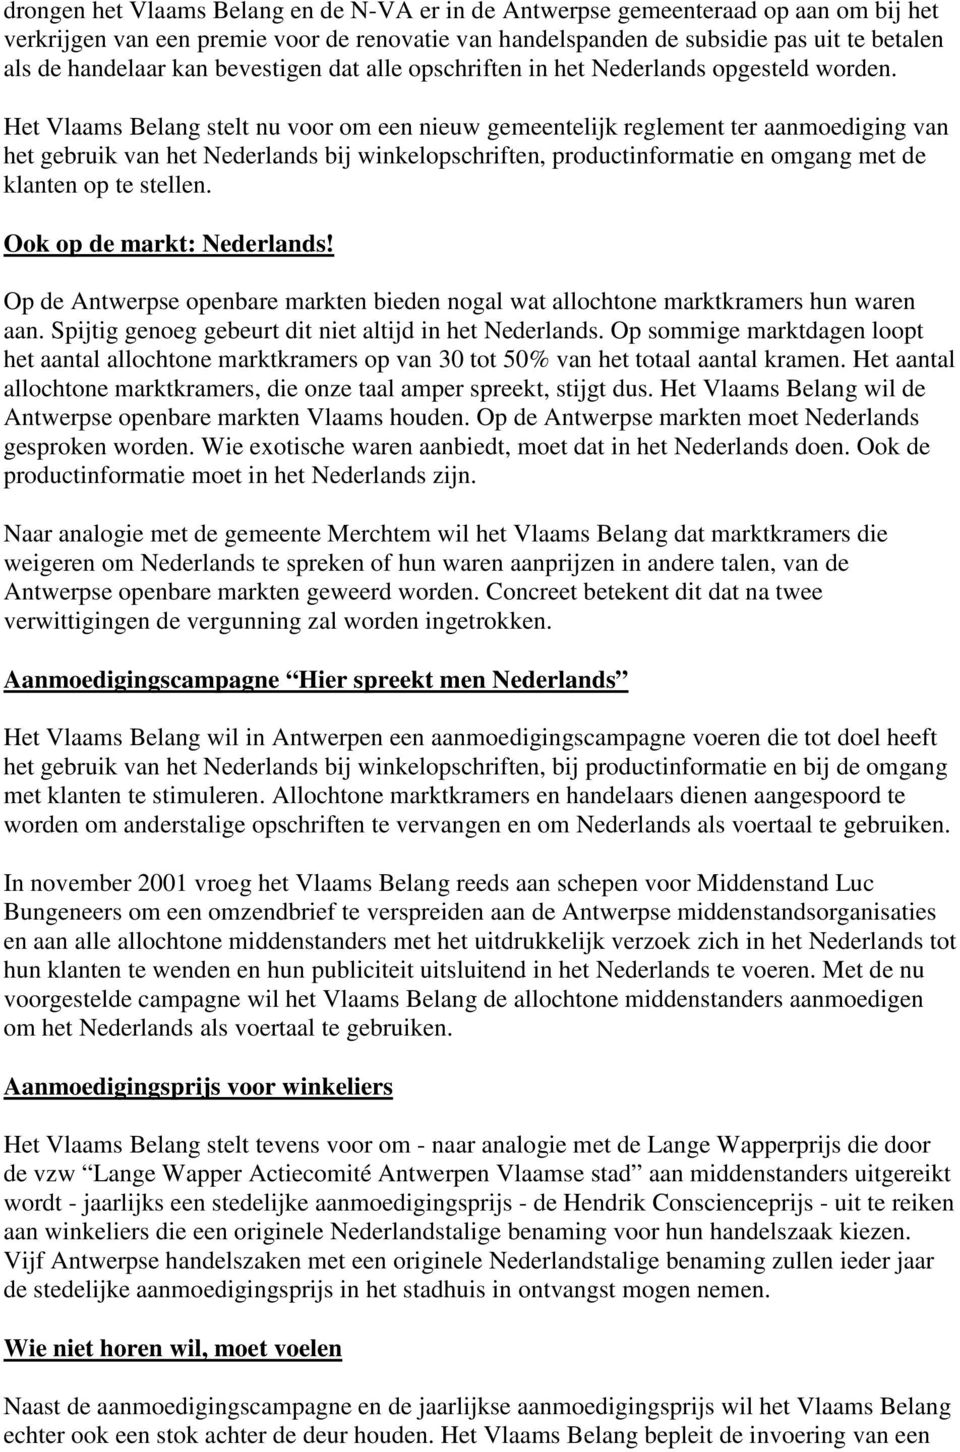 Het Vlaams Belang stelt nu voor om een nieuw gemeentelijk reglement ter aanmoediging van het gebruik van het Nederlands bij winkelopschriften, productinformatie en omgang met de klanten op te stellen.